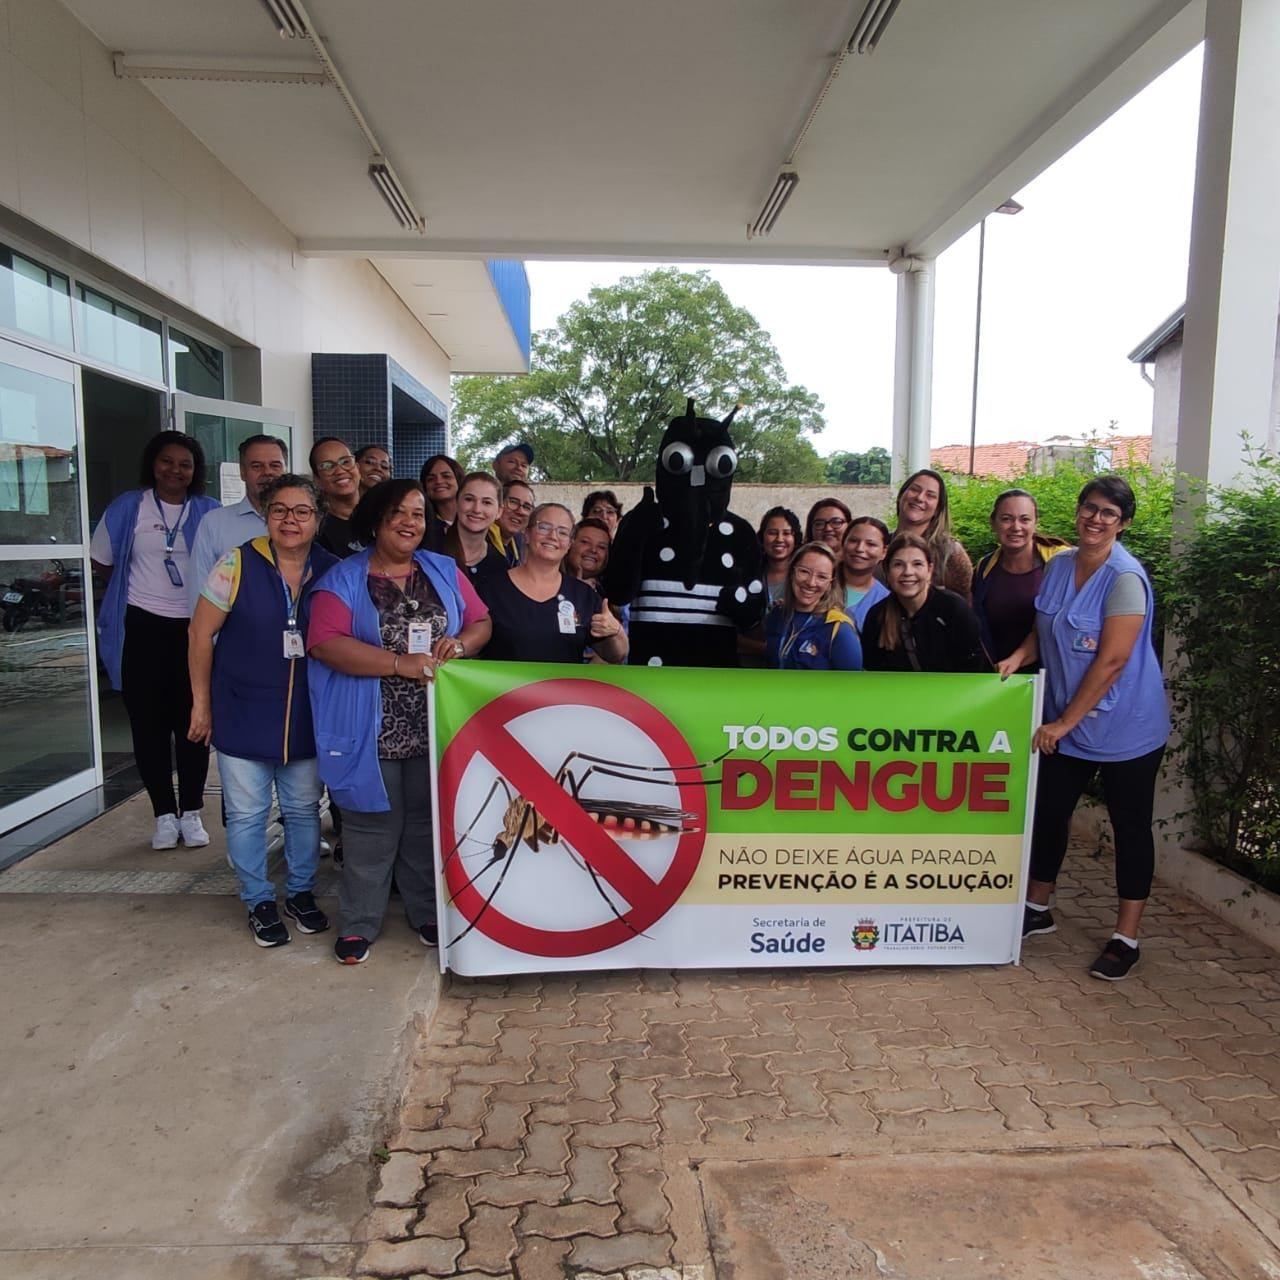 Prefeitura de Itatiba segue com trabalhos no combate à dengue no município